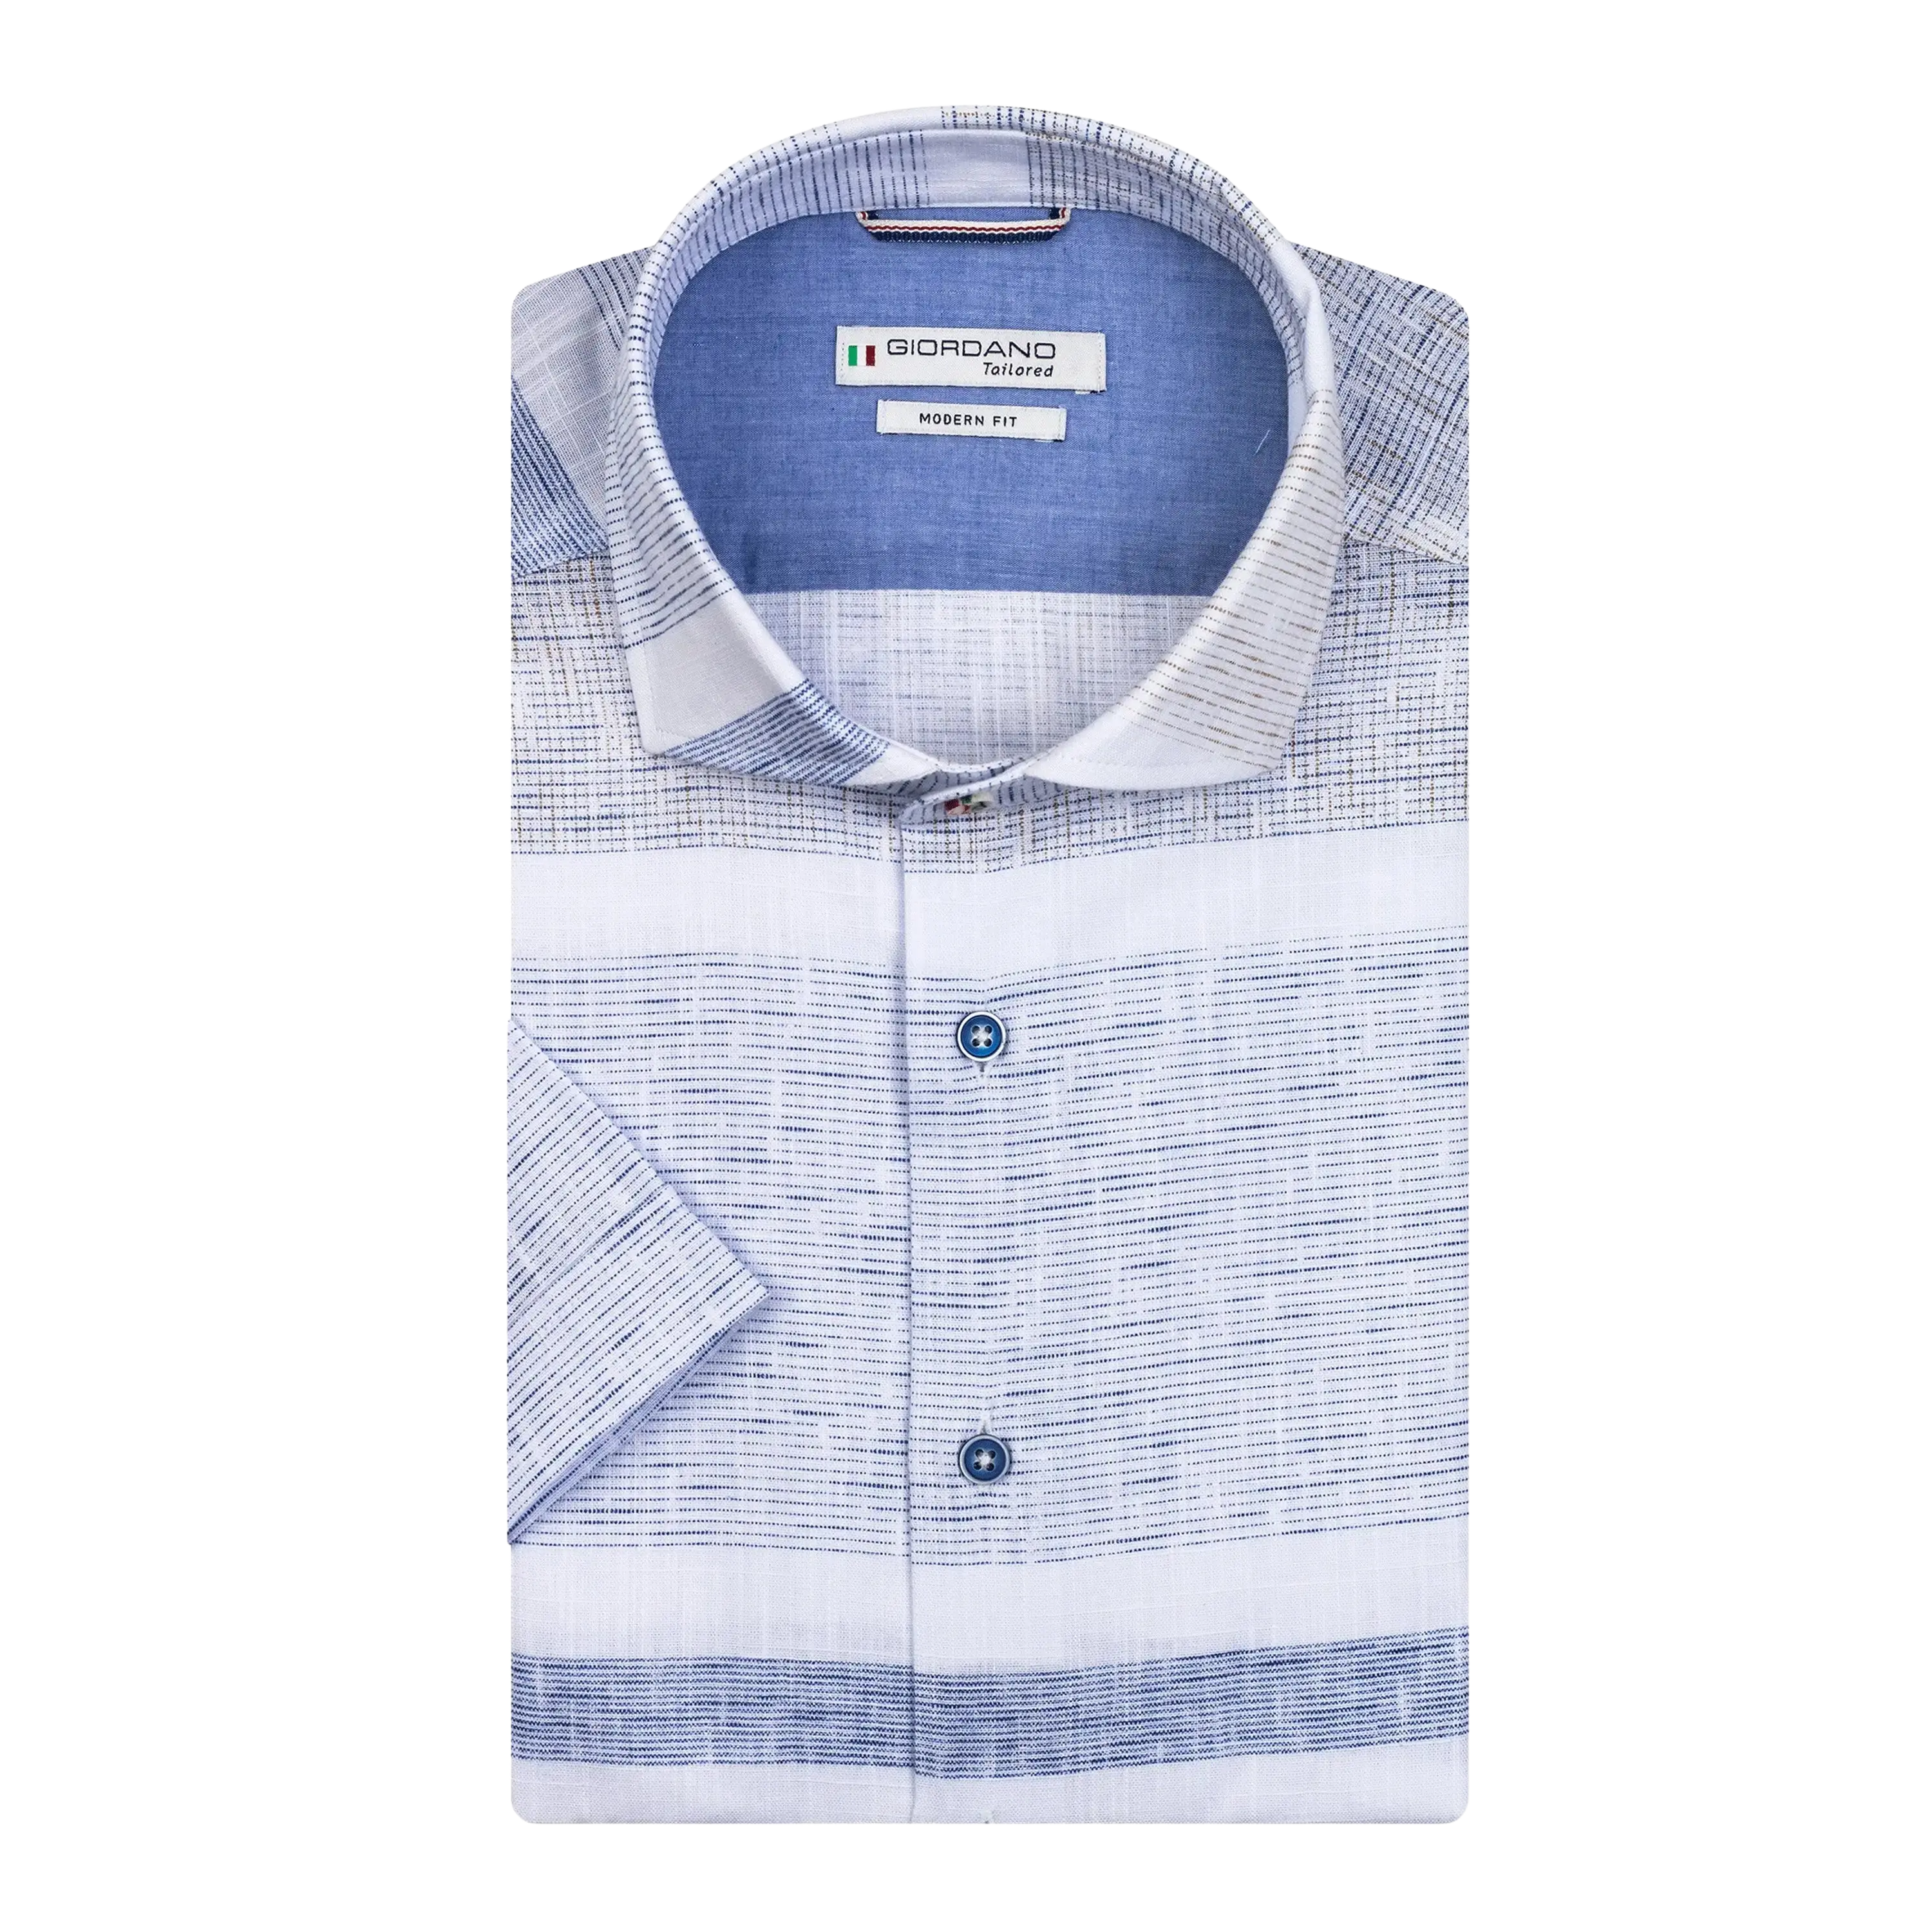 Giordano Horizontal Stripe Short Sleeve Shirt for Men